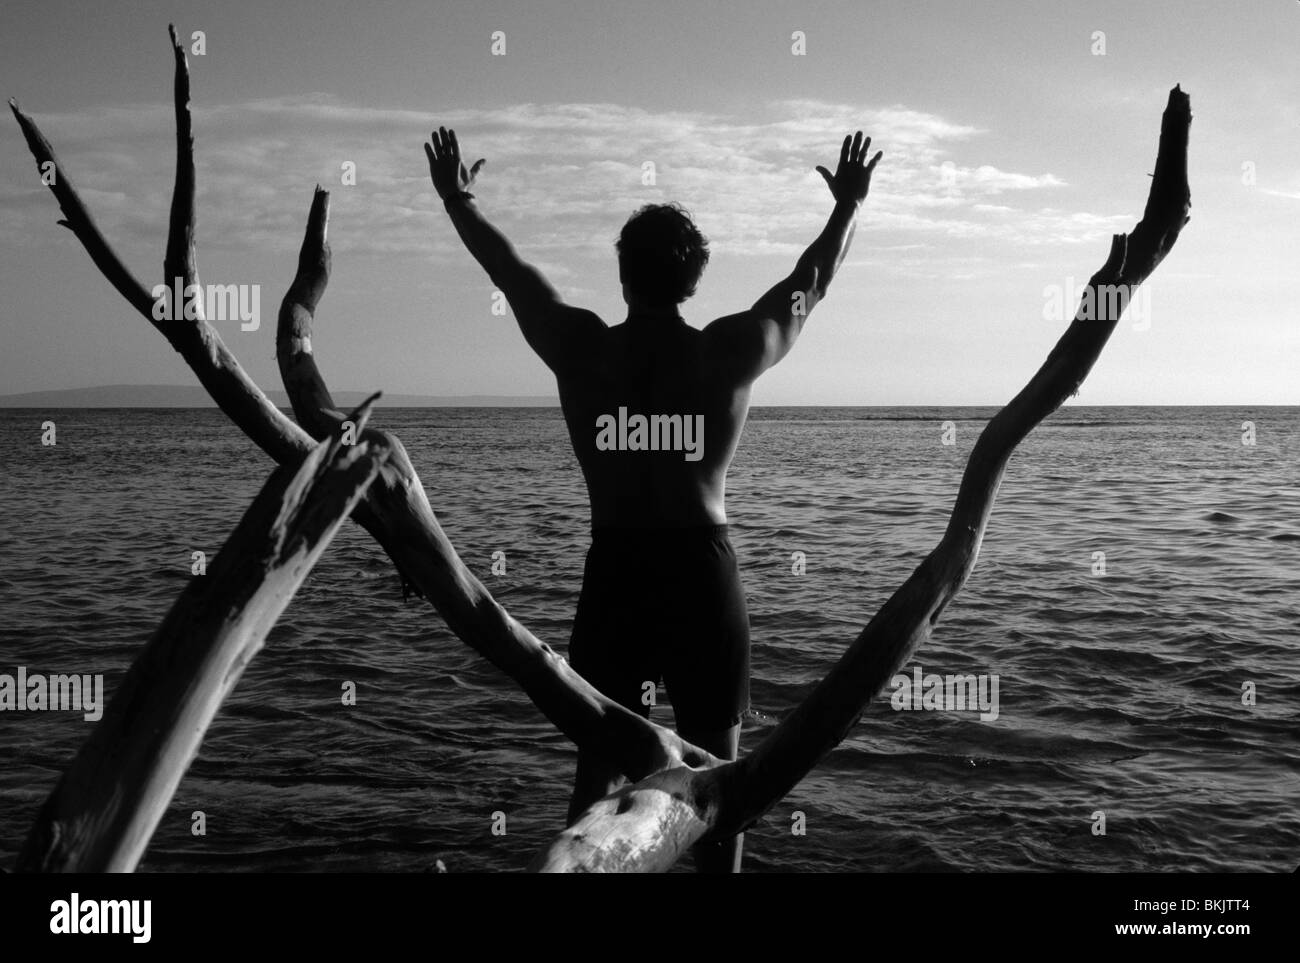 Menschen praktizieren Yoga mit erhobenen Armen, außen am Rand des Wassers, schwarz / weiß Stockfoto